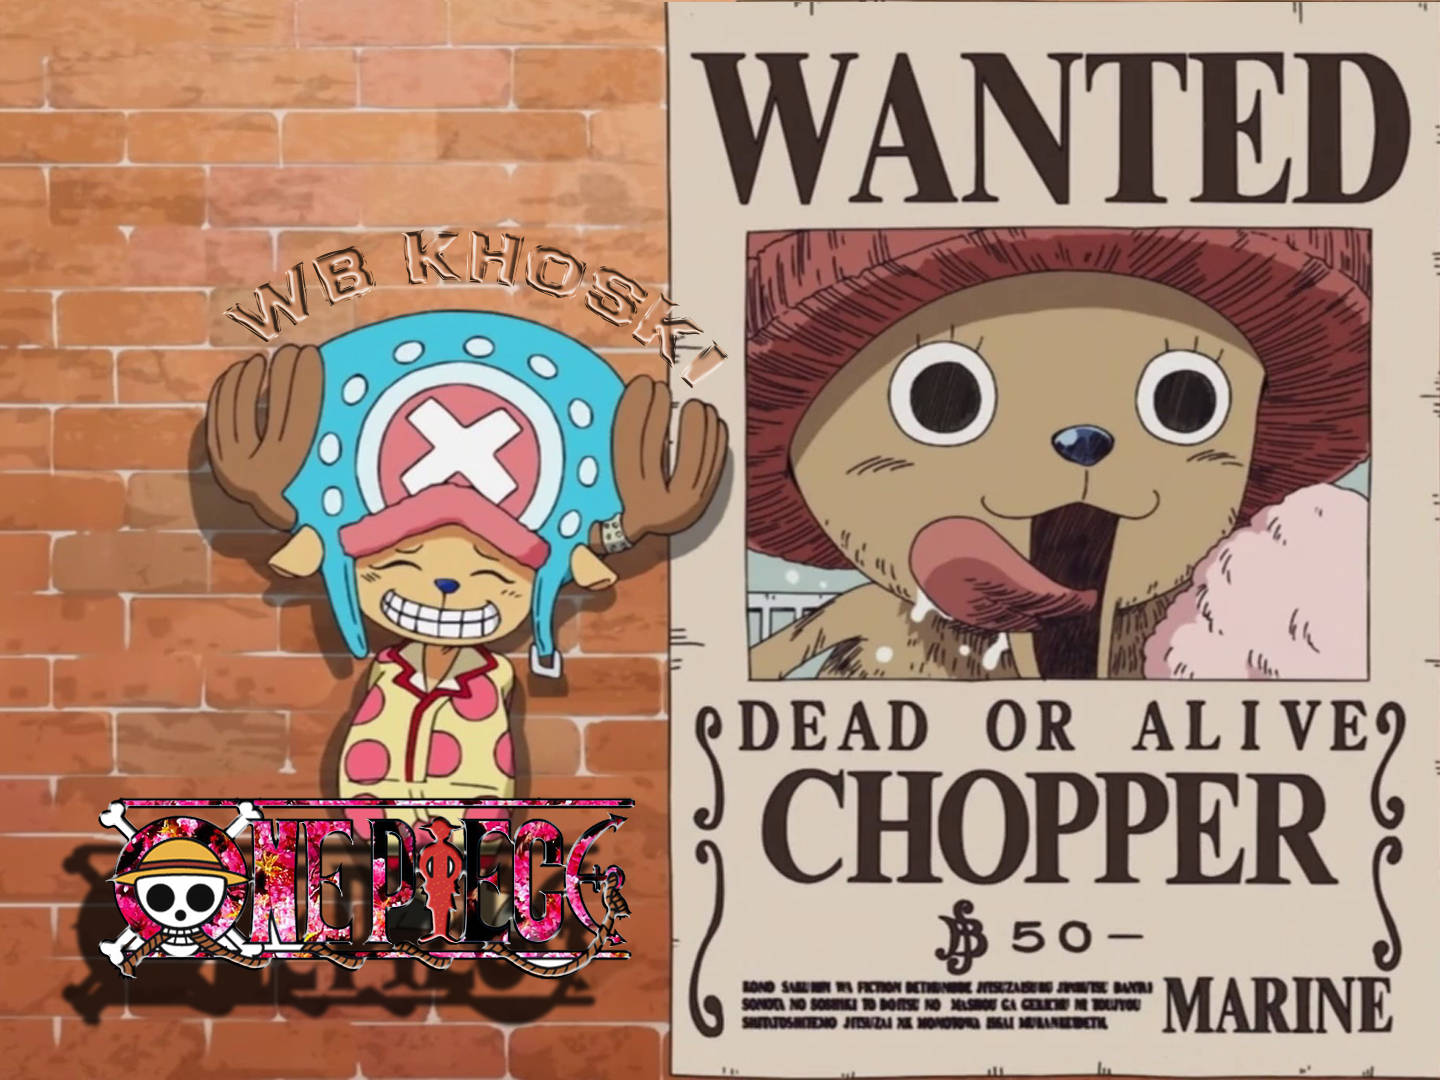 Tony Tony Chopper Wanted Poster Wallpaper